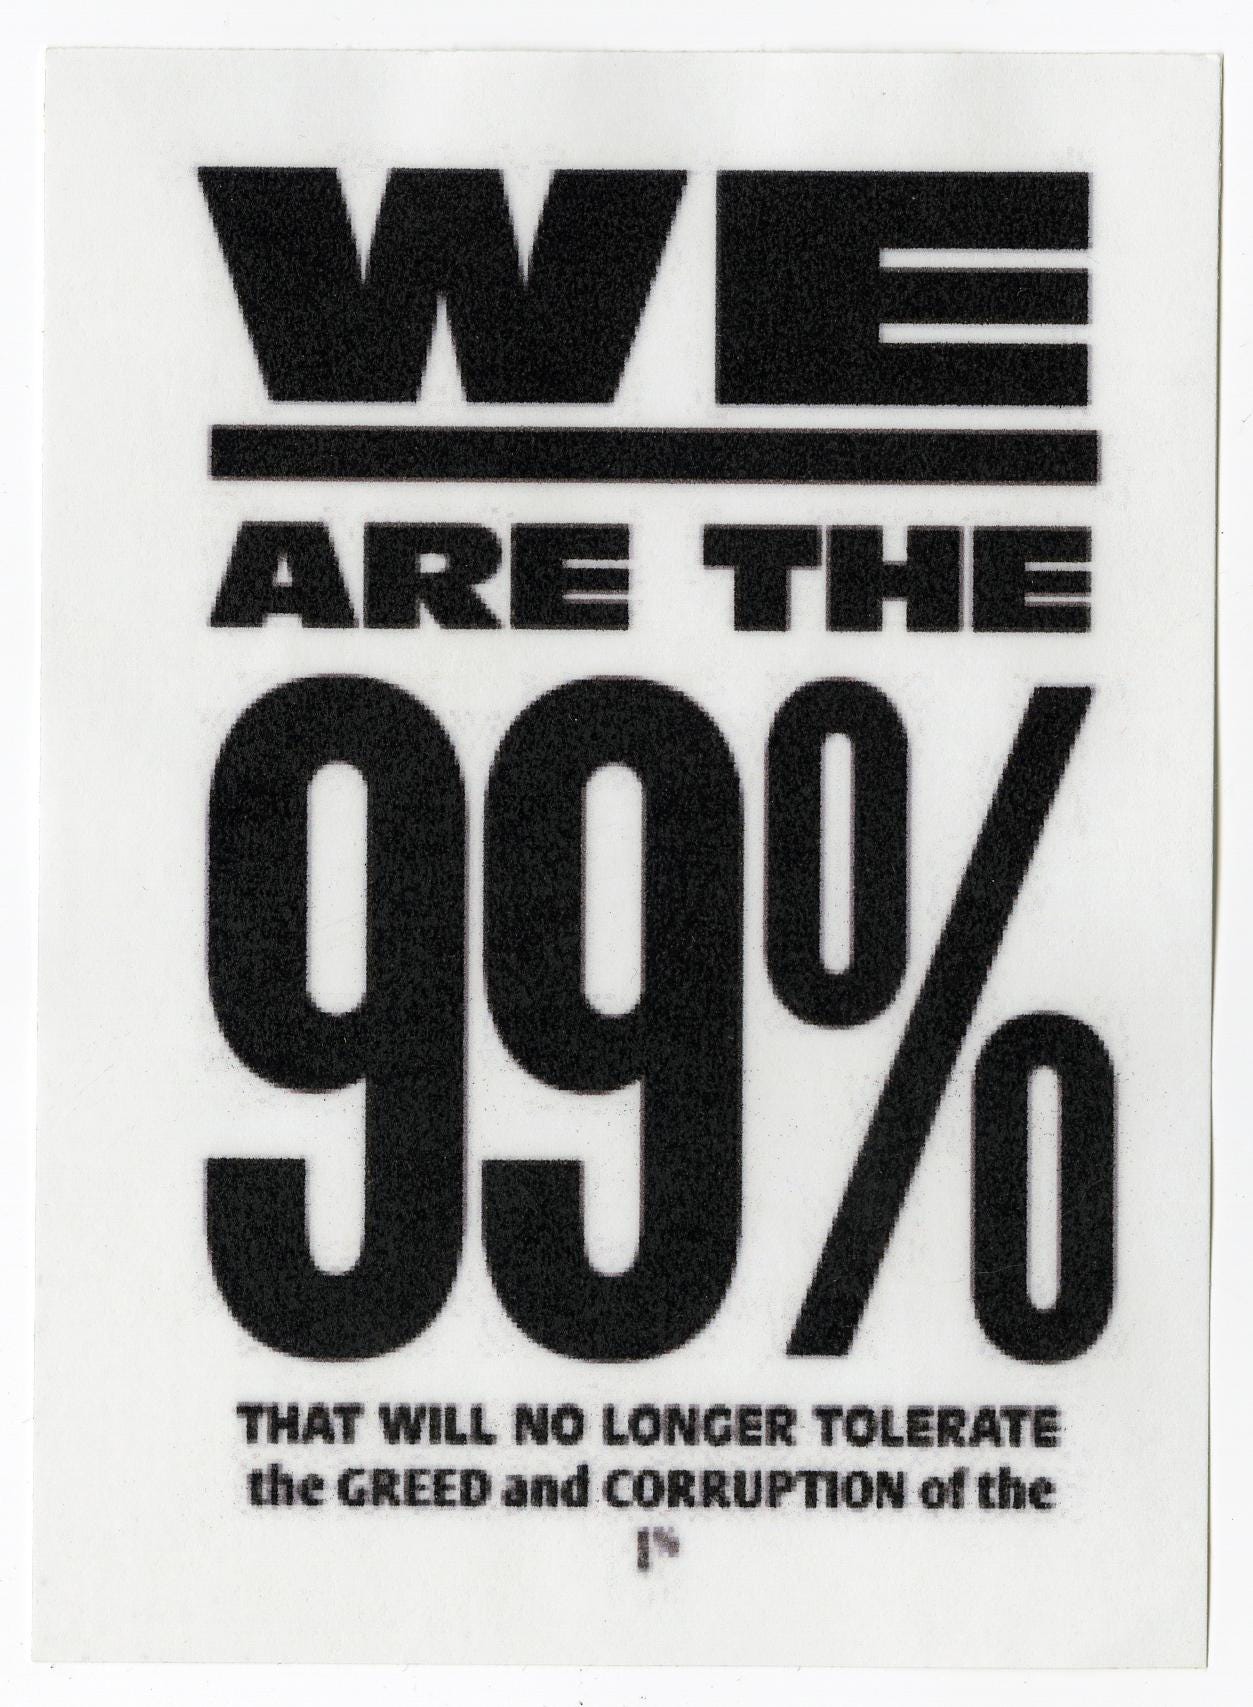 Cartaz de 2011 do movimento “Occupy Wall Street”, contra a desigualdade social e a crise econômica pós-2008.